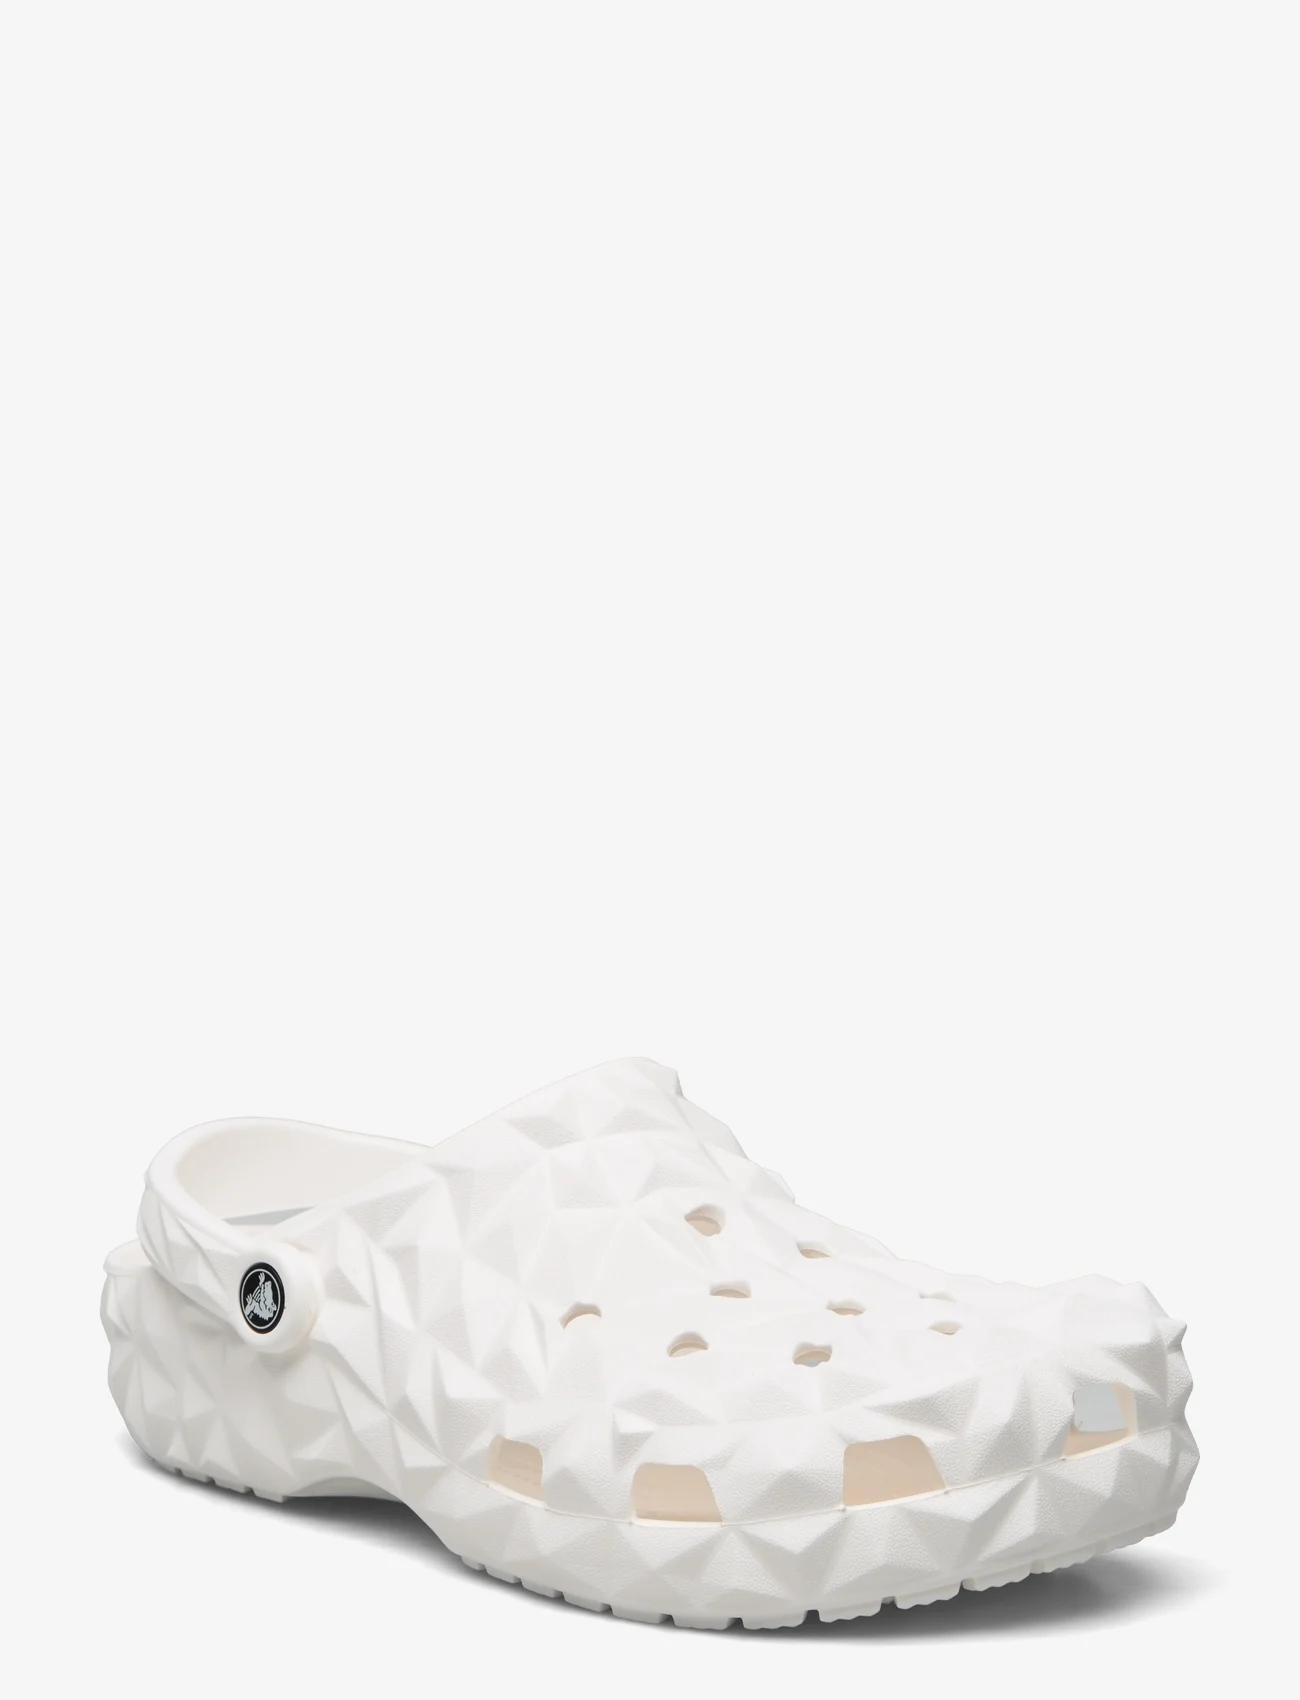 Crocs - Classic Geometric Clog - sandals - white - 0